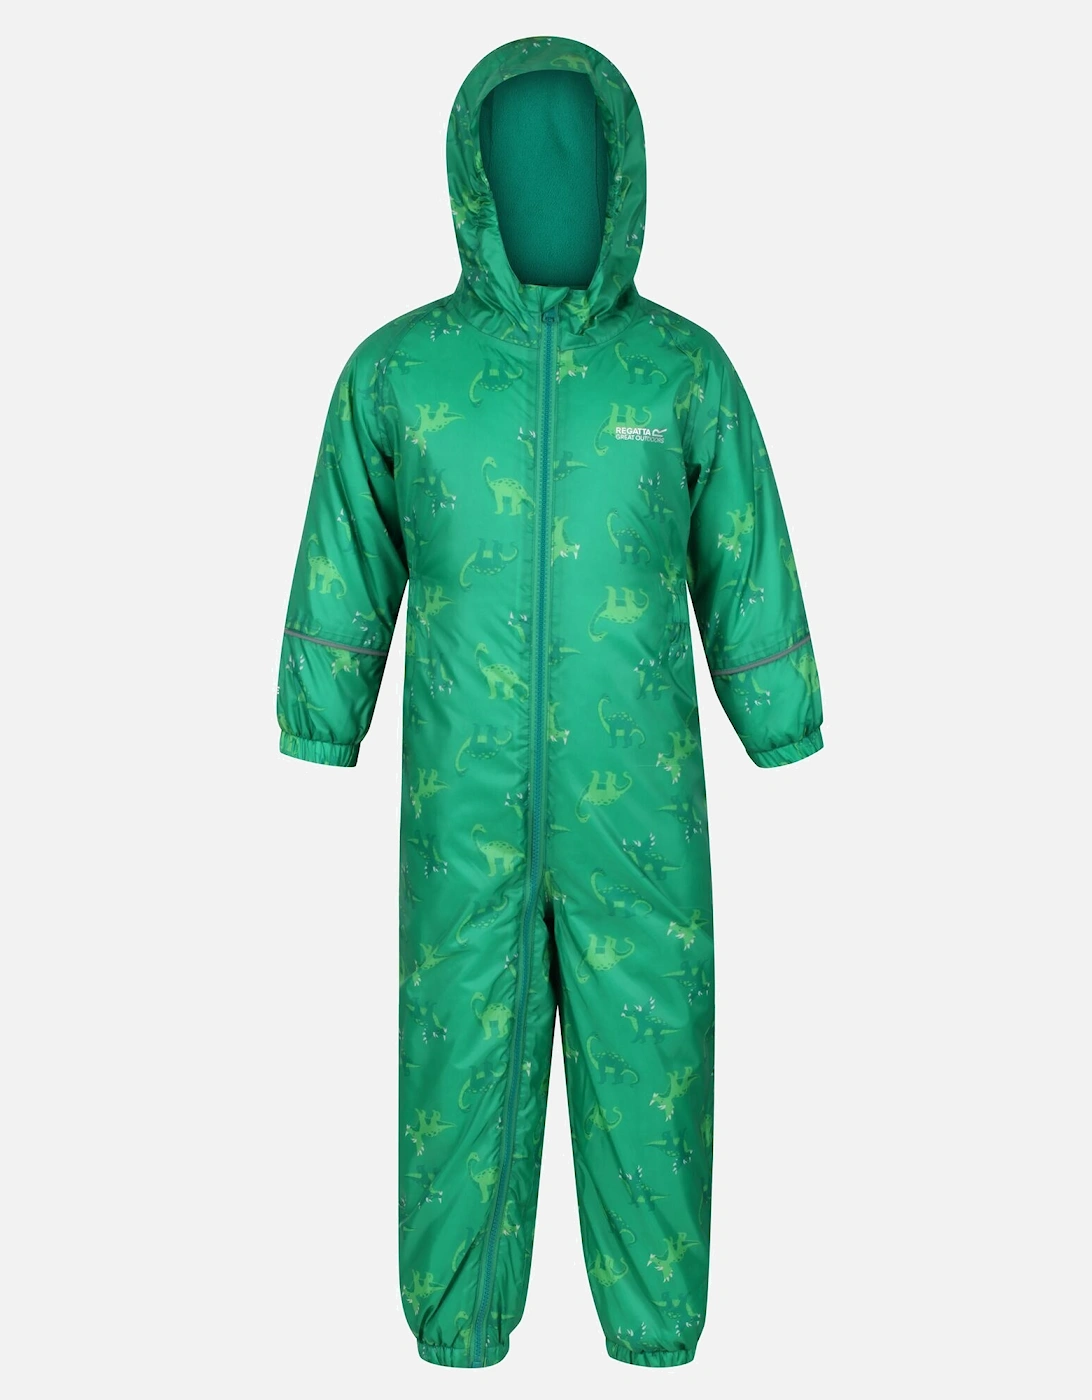 Childrens/Kids Printed Splat II Hooded Rainsuit, 6 of 5